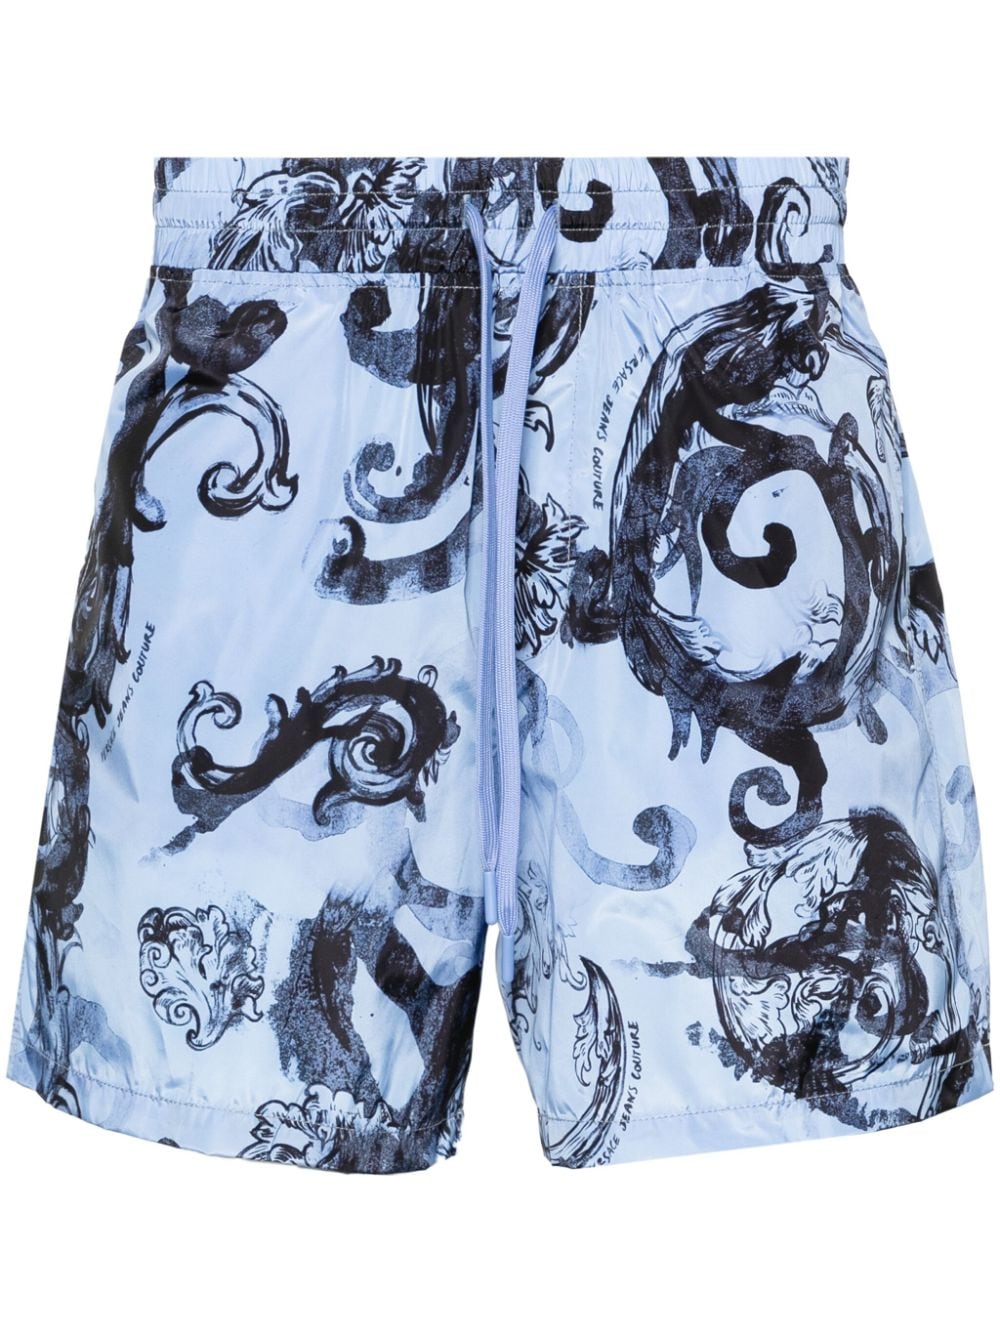 Watercolor print Bermuda shorts